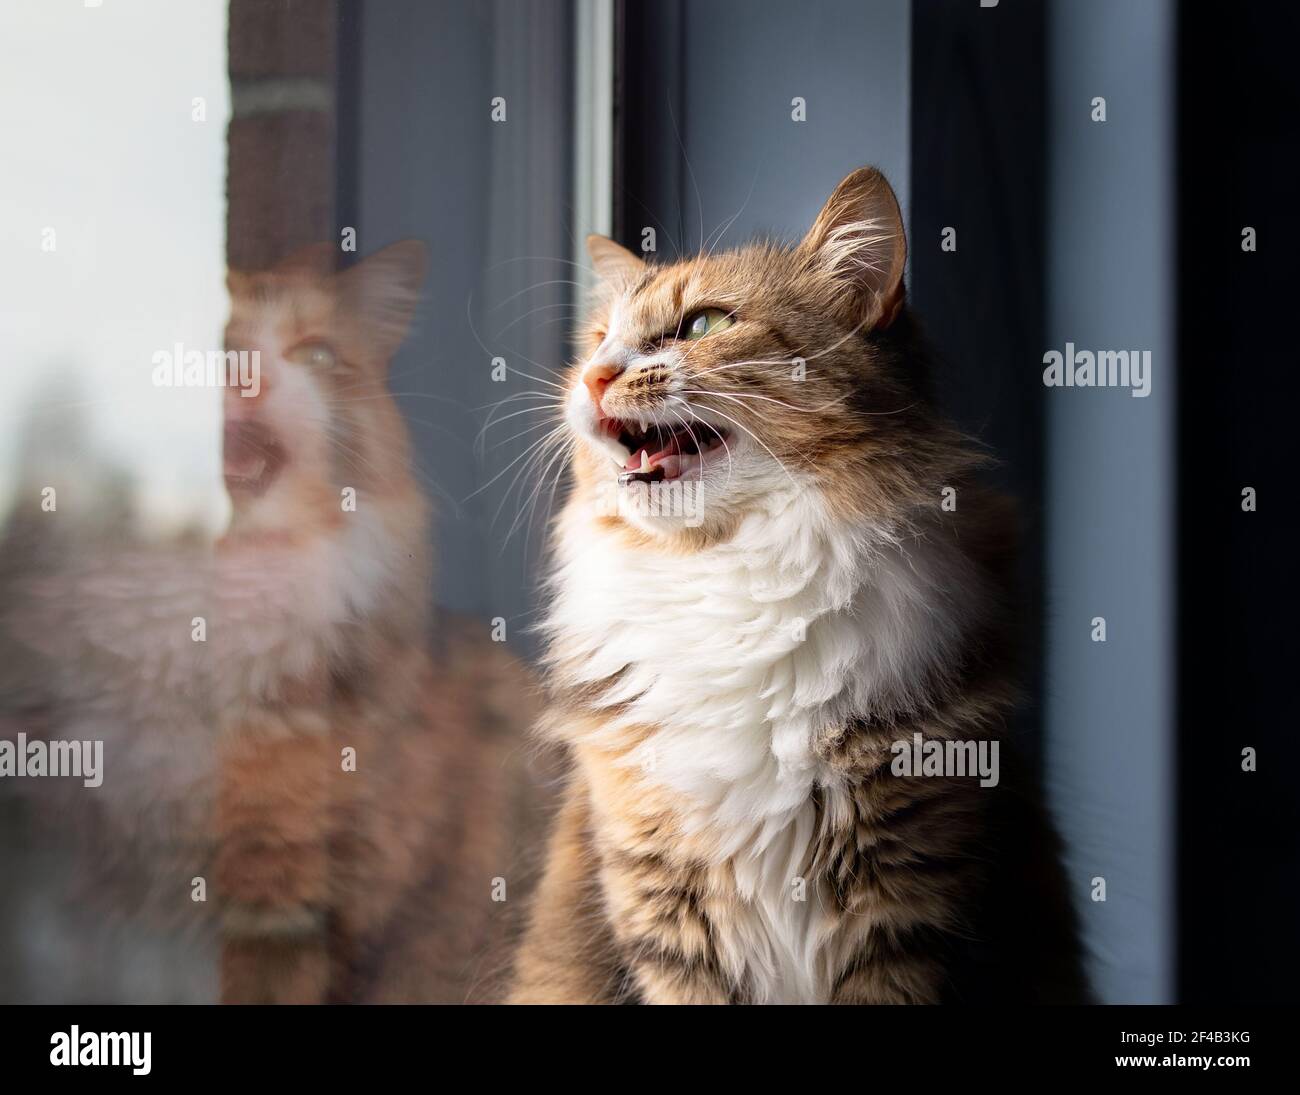 Gazouillis ou cliquetis de Cat. Adorable chaton assis sur le rebord de la fenêtre tout en vochant avec la bouche large ouverte. Concept pour les chats chirp ou chat parlant. Banque D'Images